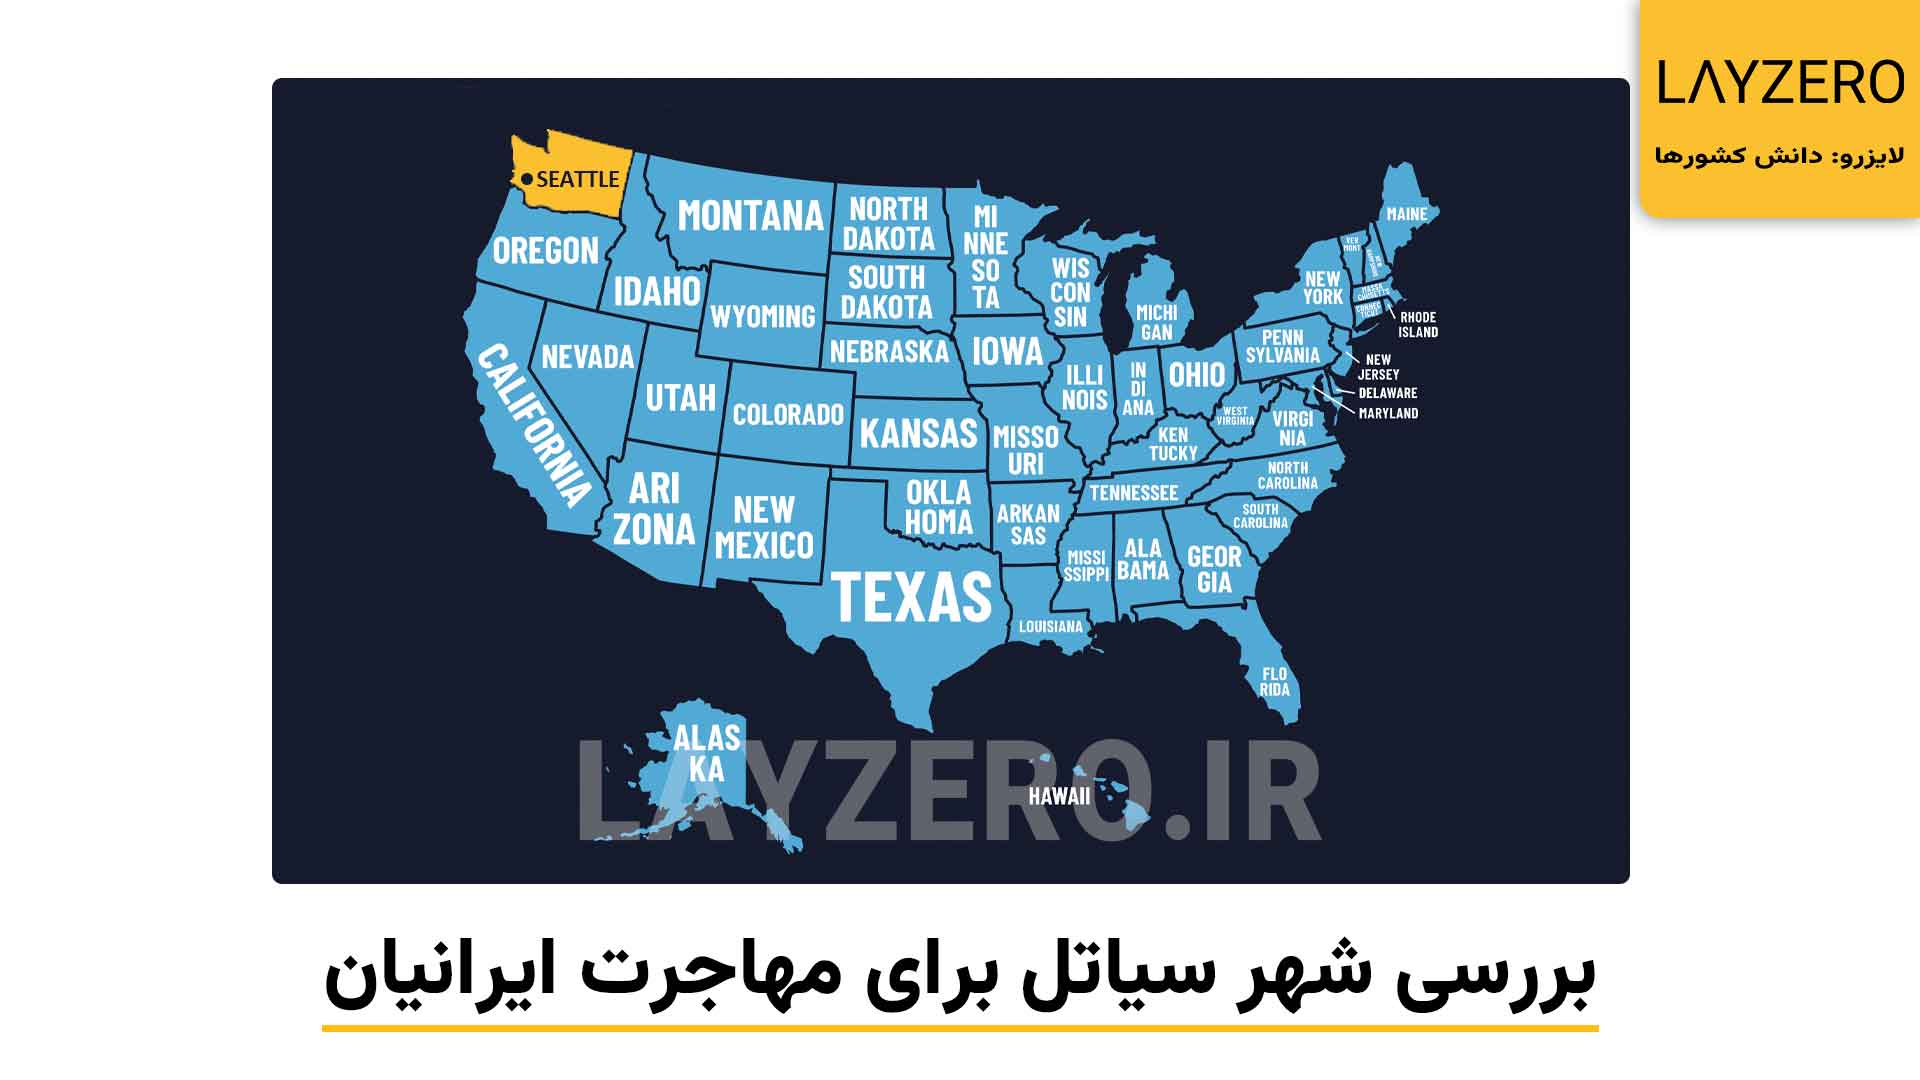 عکسی از موقعیت شهر سیاتل بر روی نقشه آمریکا، شهر سیاتل برای برندگان ایرانی لاتاری